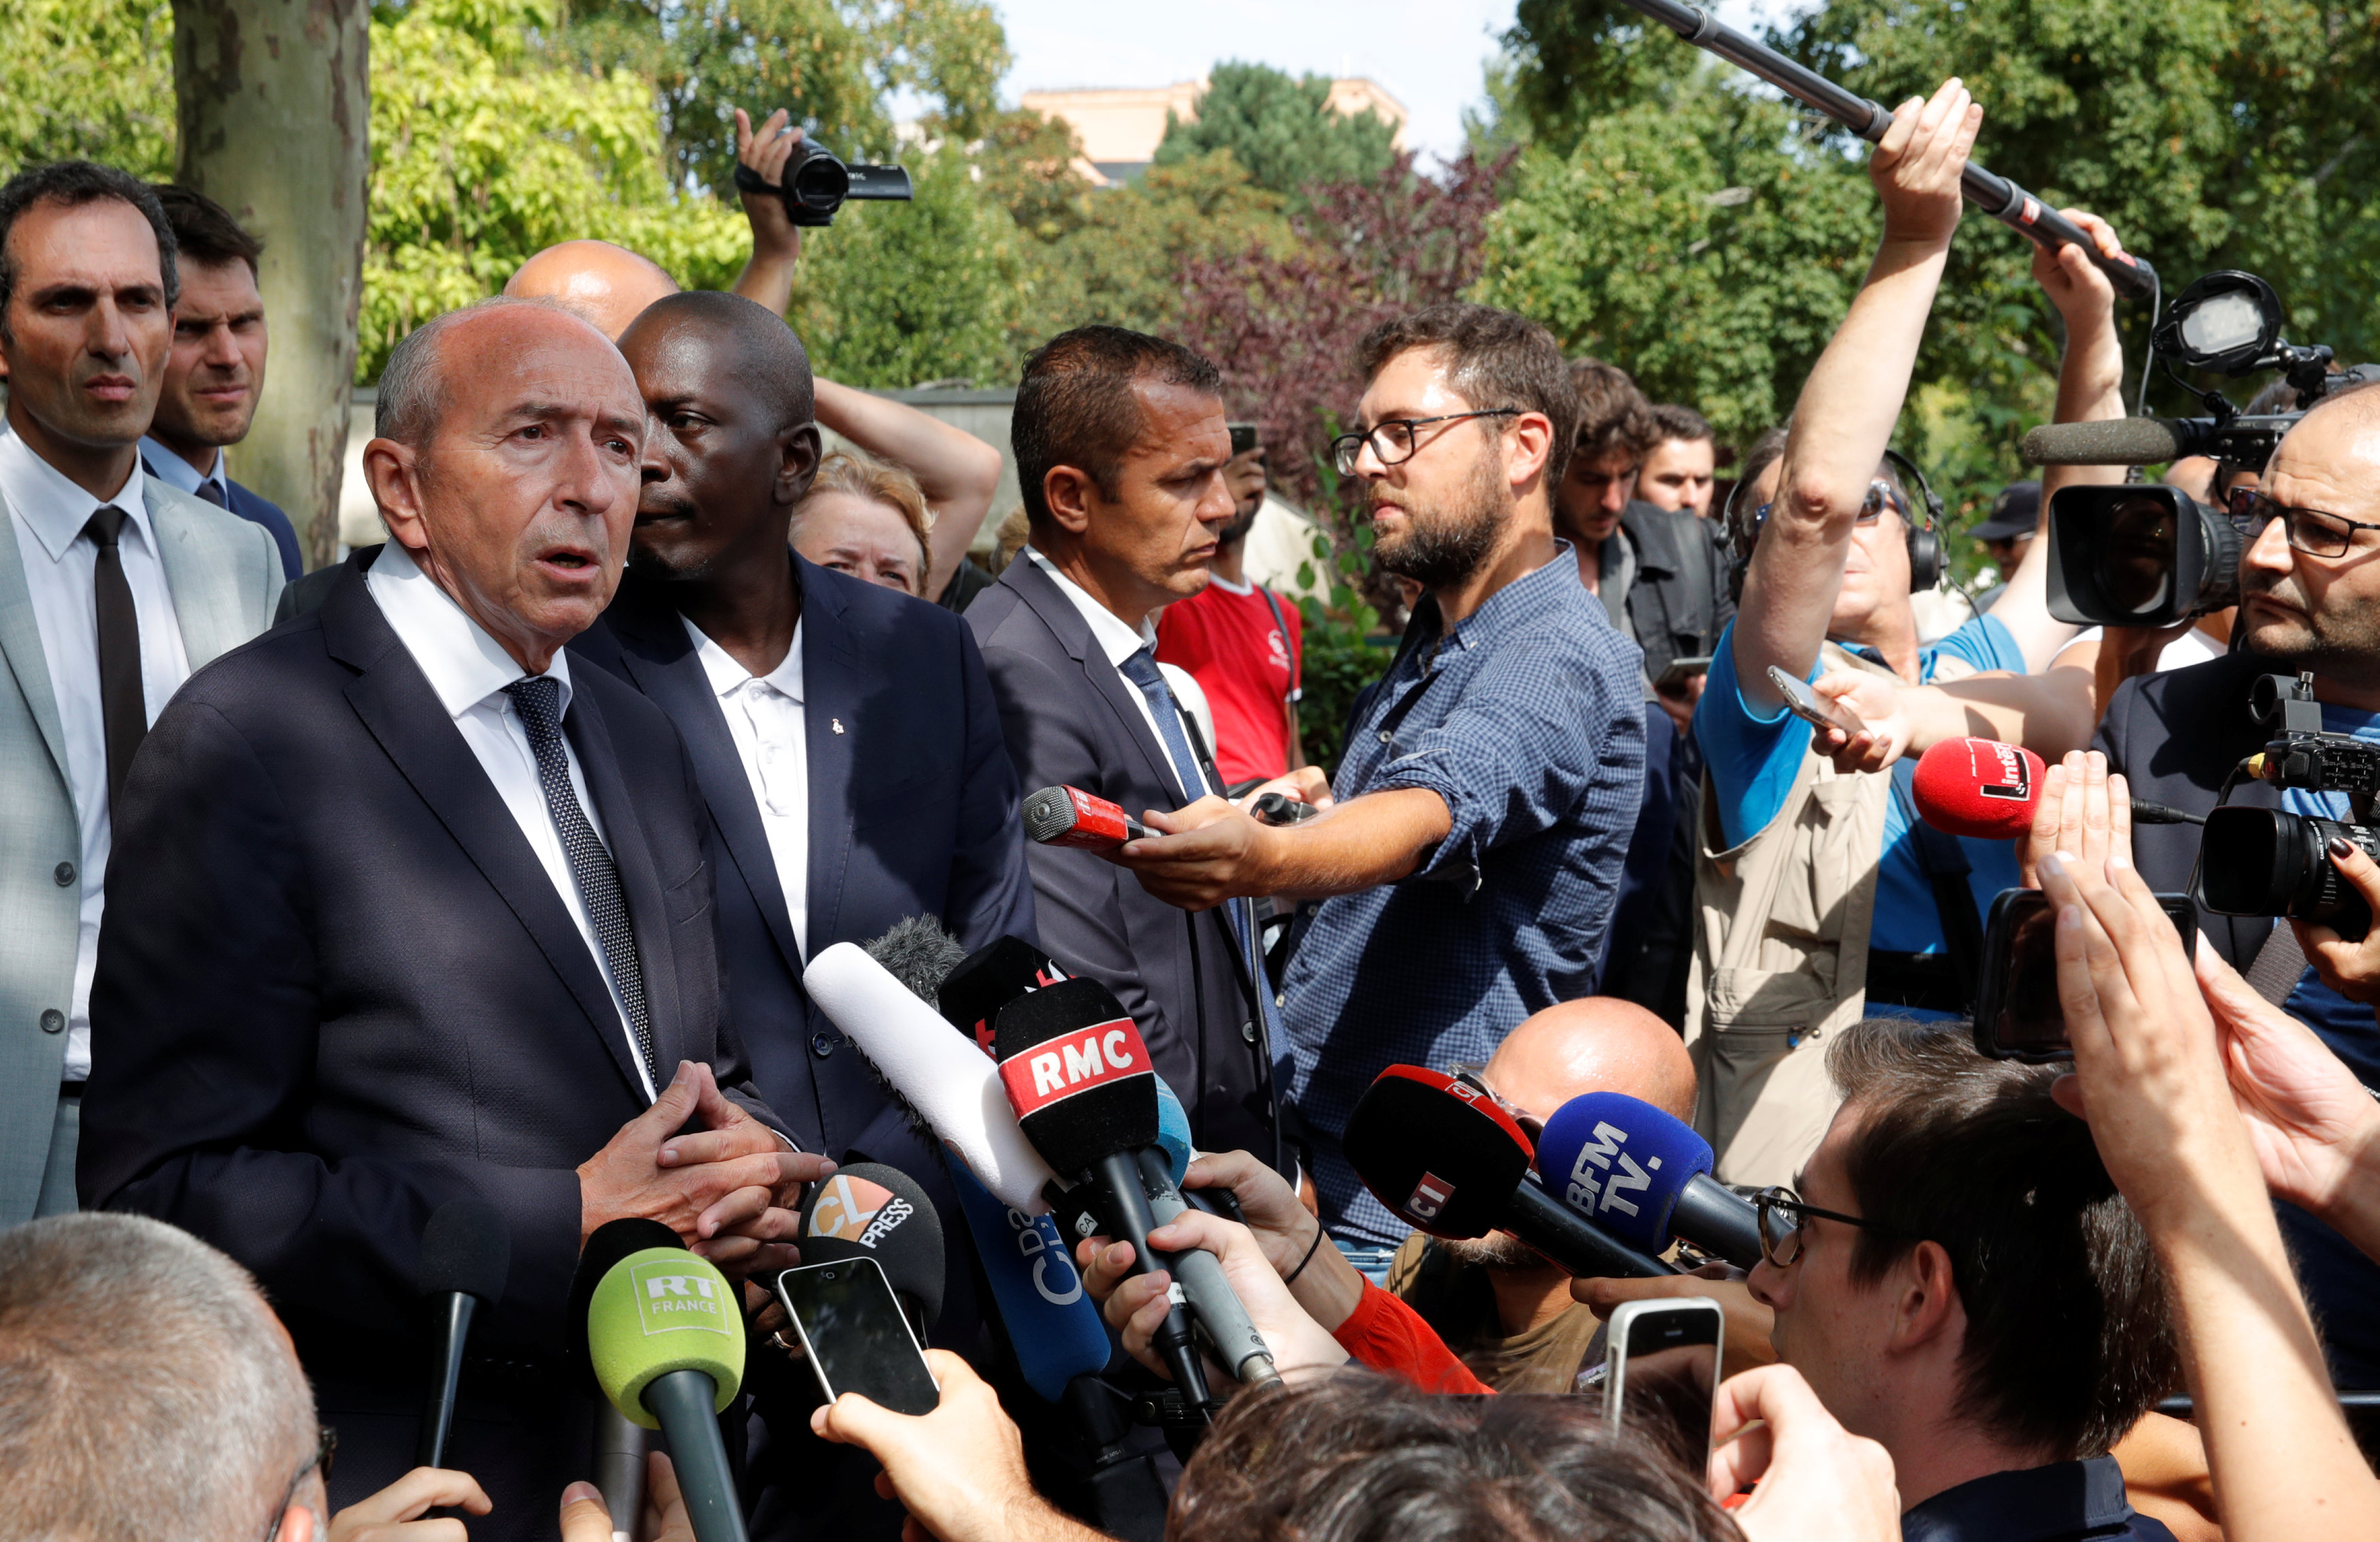  وزير الداخلية الفرنسي جيرارد كولومب يتحدث إلى الصحفيين  بالقرب من مكان الحادث 